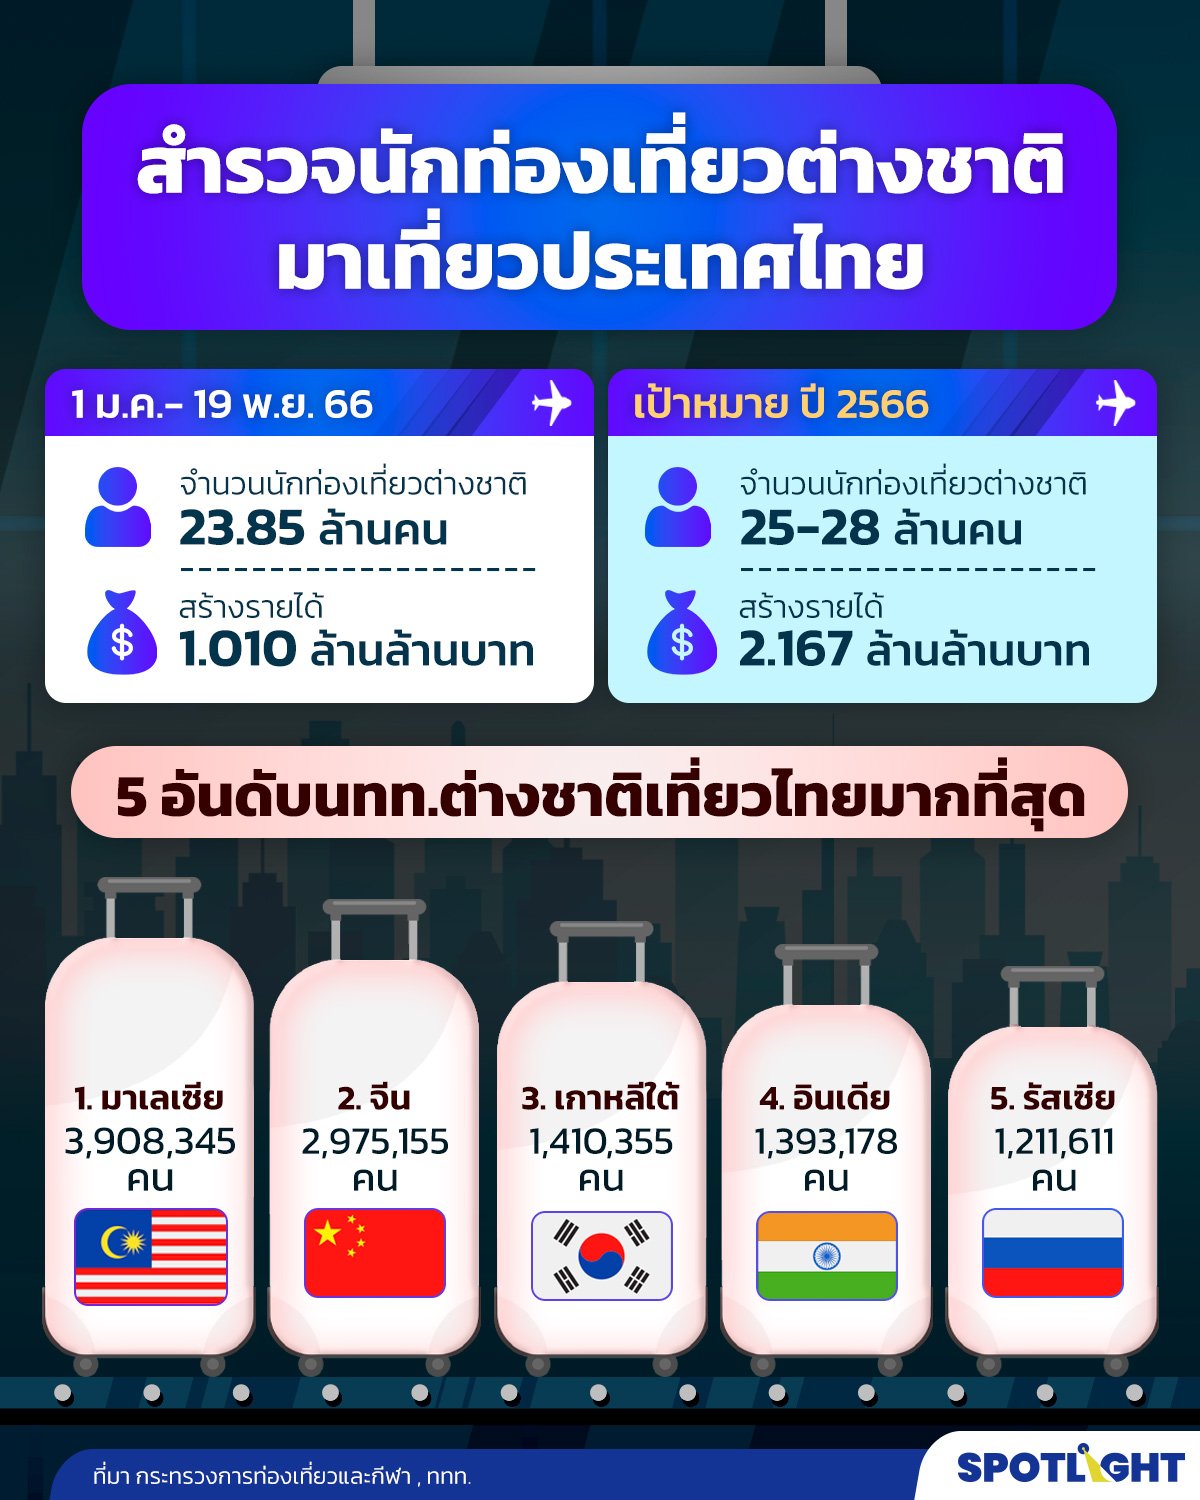 จำนวนนักท่องเที่ยวต่างชาติเข้าไทย